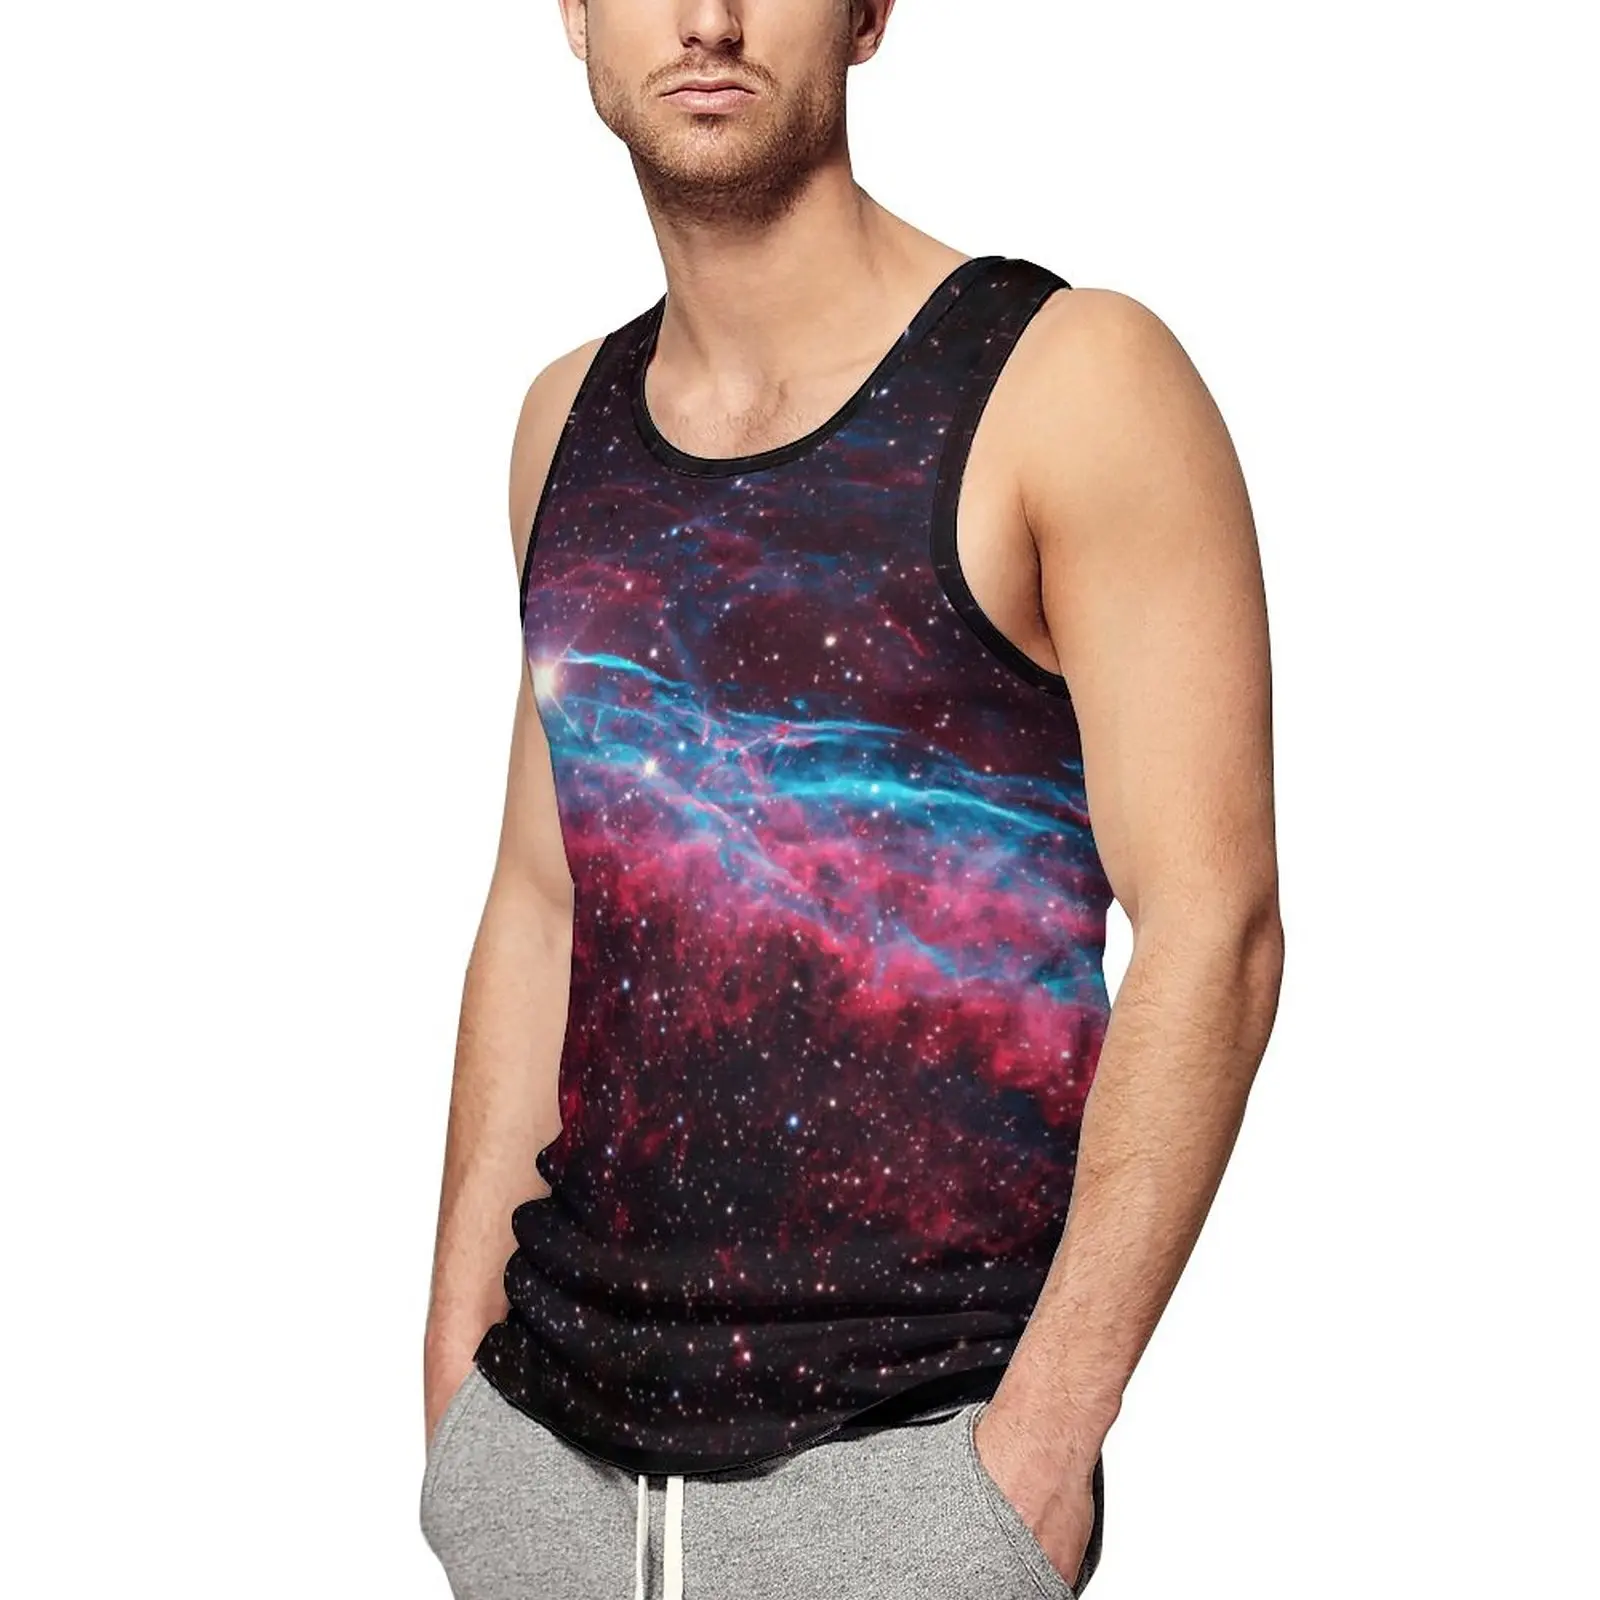 

Galaxy Nebula Summer Tank Top Stars Print Workout Tops Males Printed Fashion Sleeveless Shirts Large Size